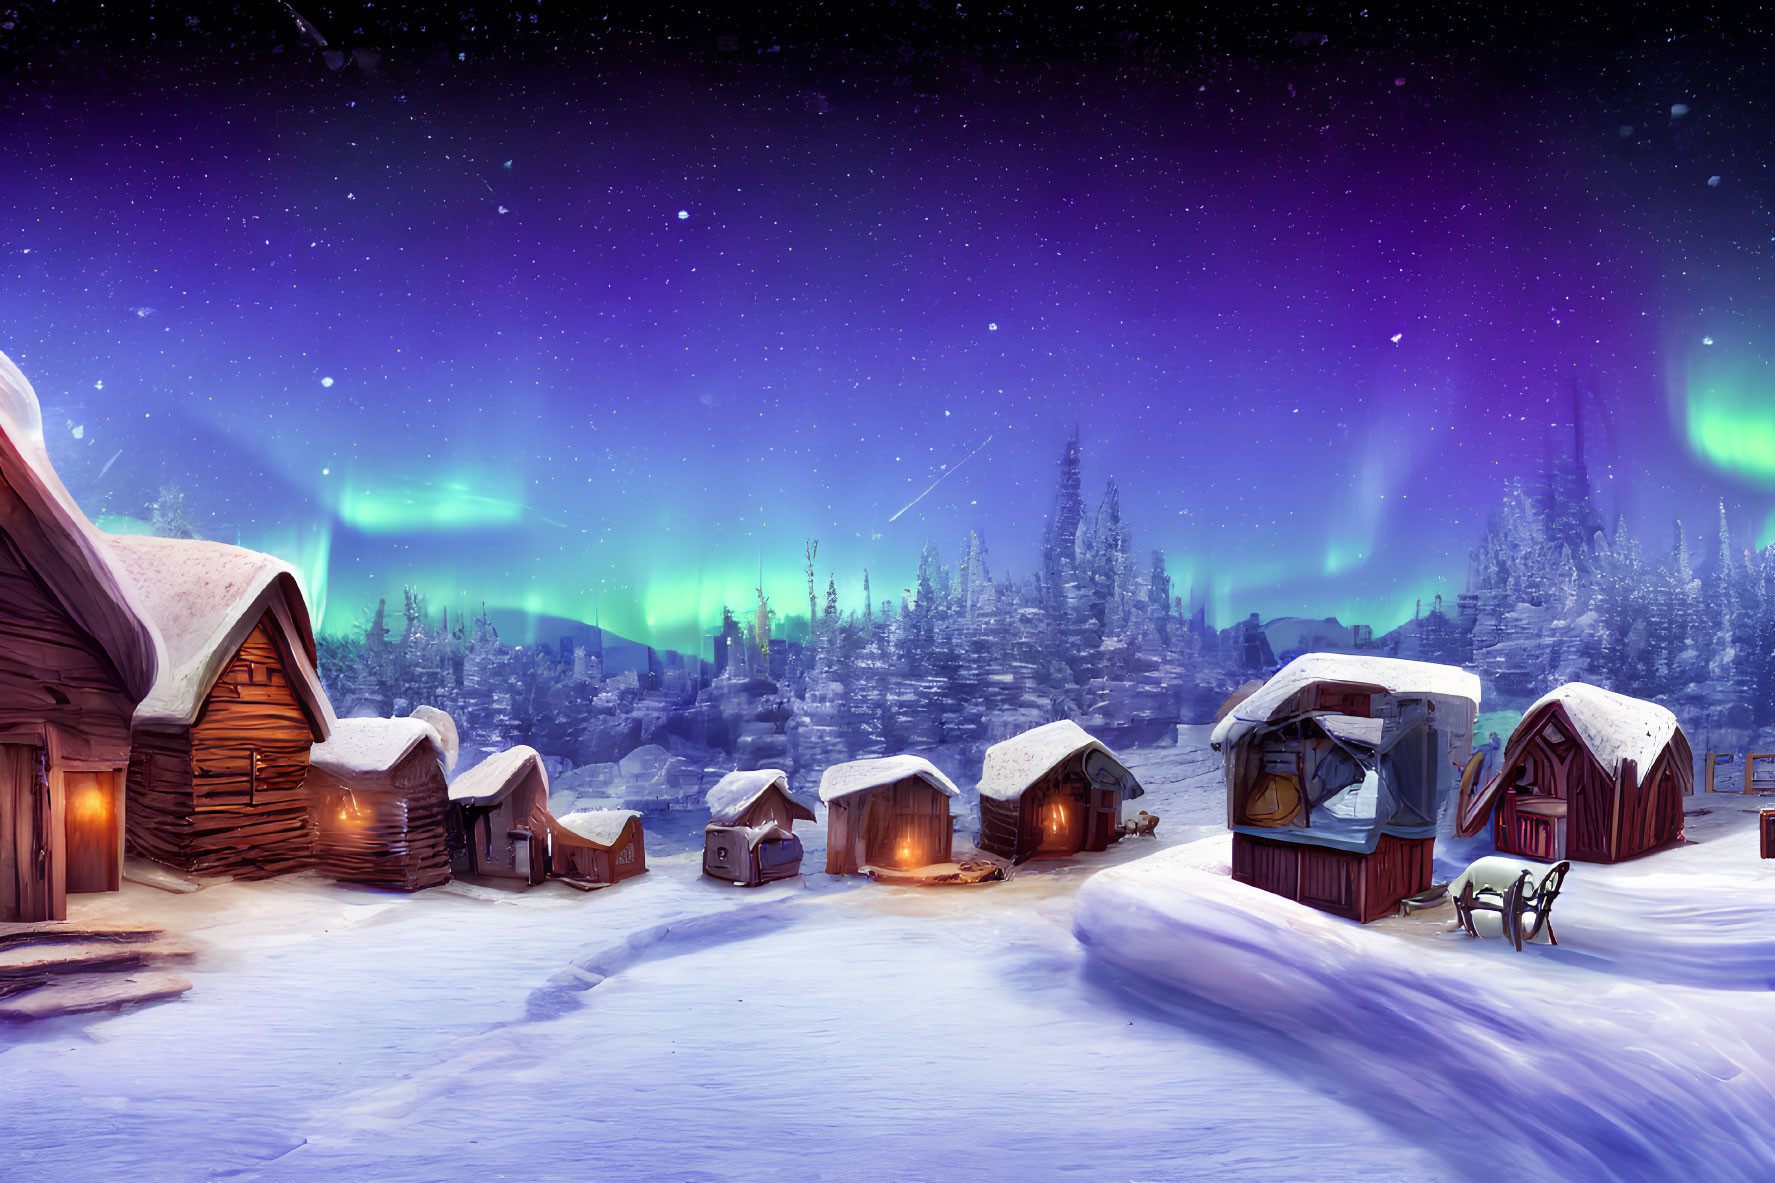 Winter village scene with cabins under Northern Lights